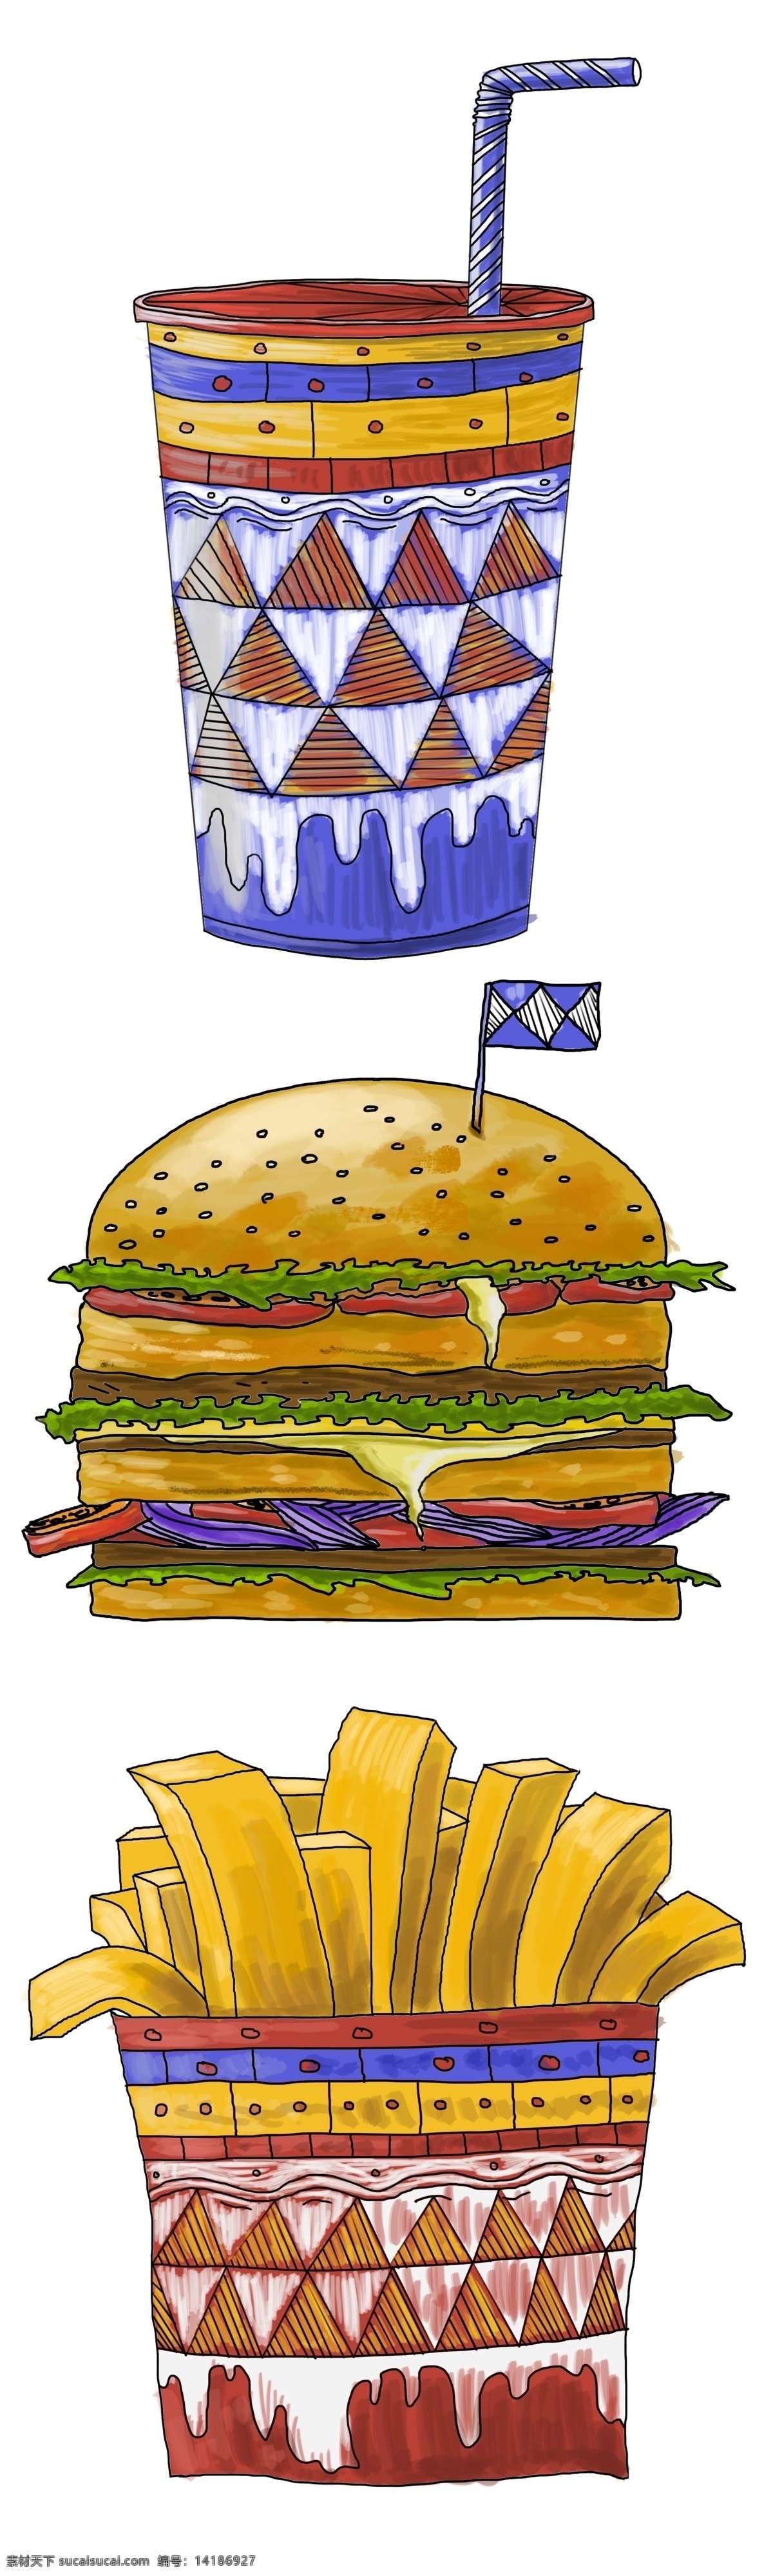 手绘 快餐 汉堡包 汉堡 薯条 饮料 垃圾食品 可乐 麦当劳套餐 卡路里 肉 美食 美式 午餐 套餐 异域